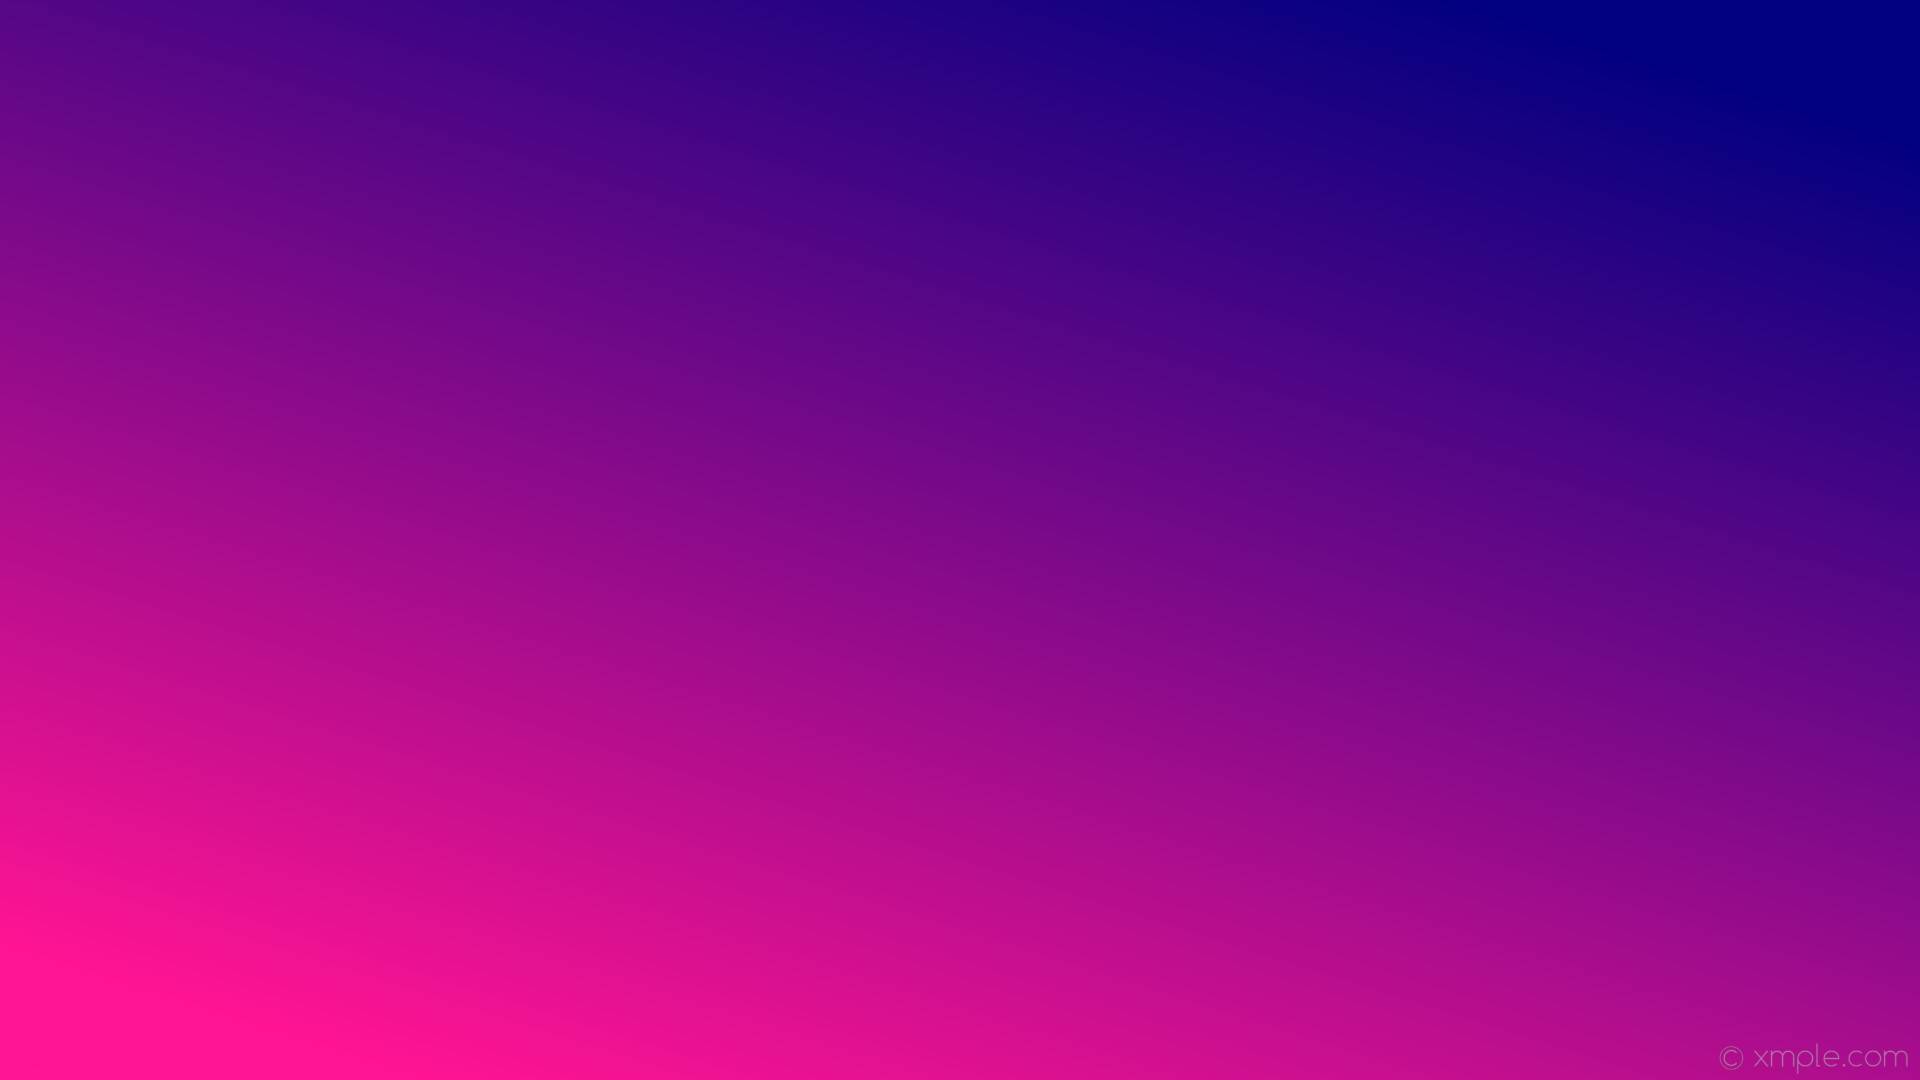 1920x1080 wallpaper gradient blue linear pink deep pink navy #ff1493 #000080 225Â°